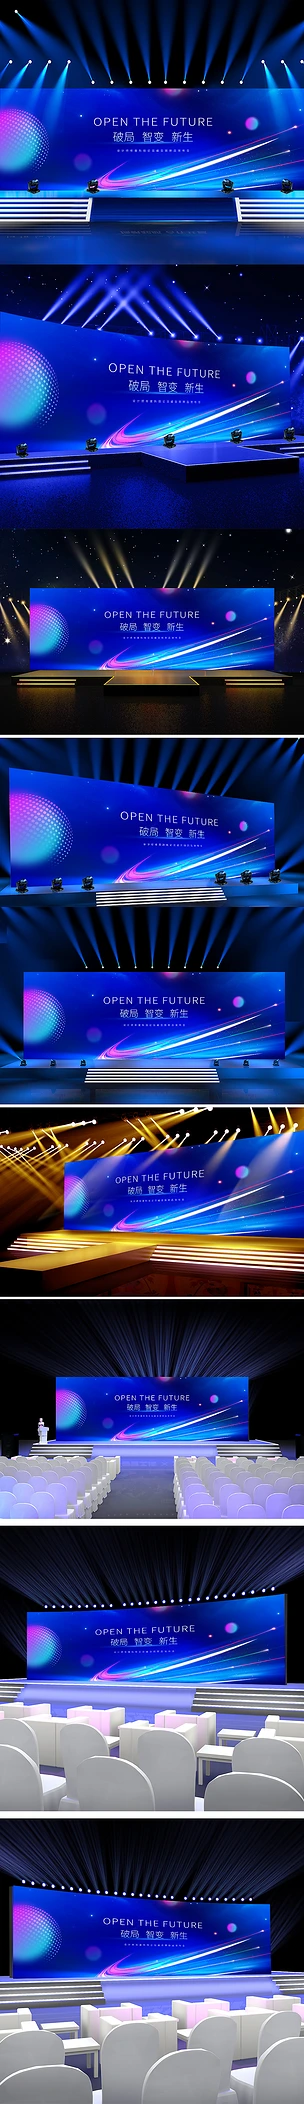 蓝色炫酷未来科技感发布会企业年会展板晚会背景